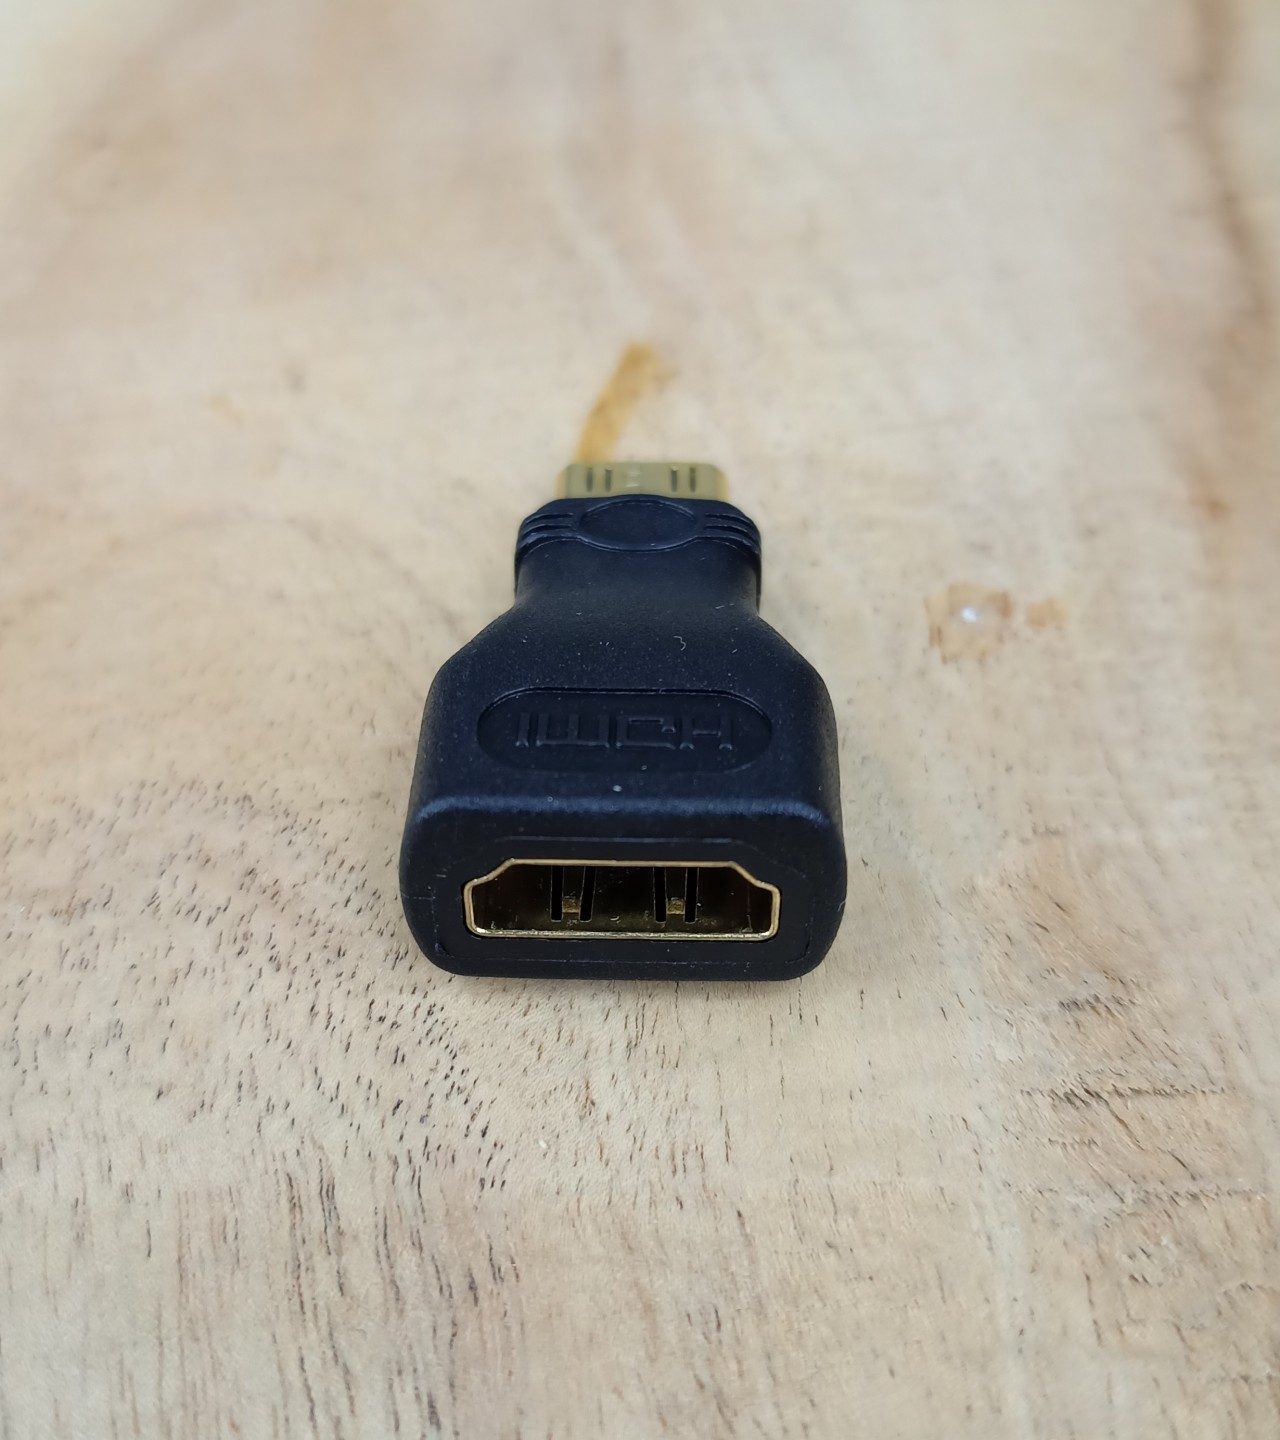 Mini HDMI to HDMI Converter